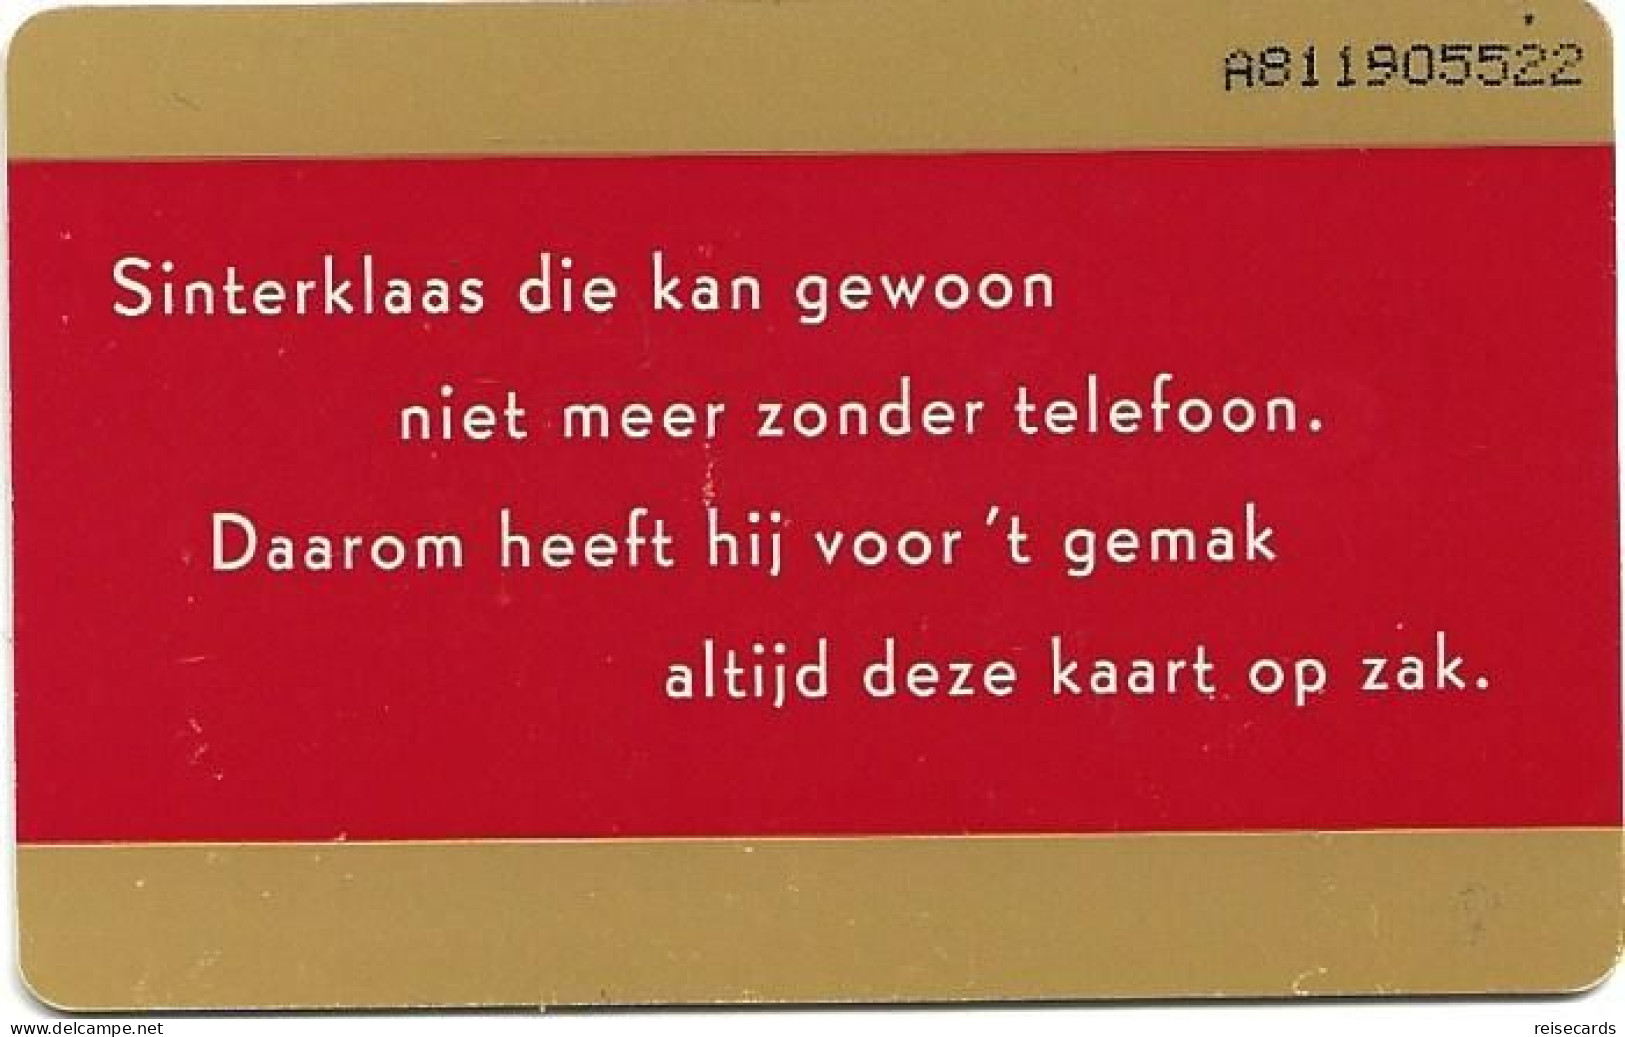 Netherlands: Ptt Telecom - 1996 Sinterklaas - Public